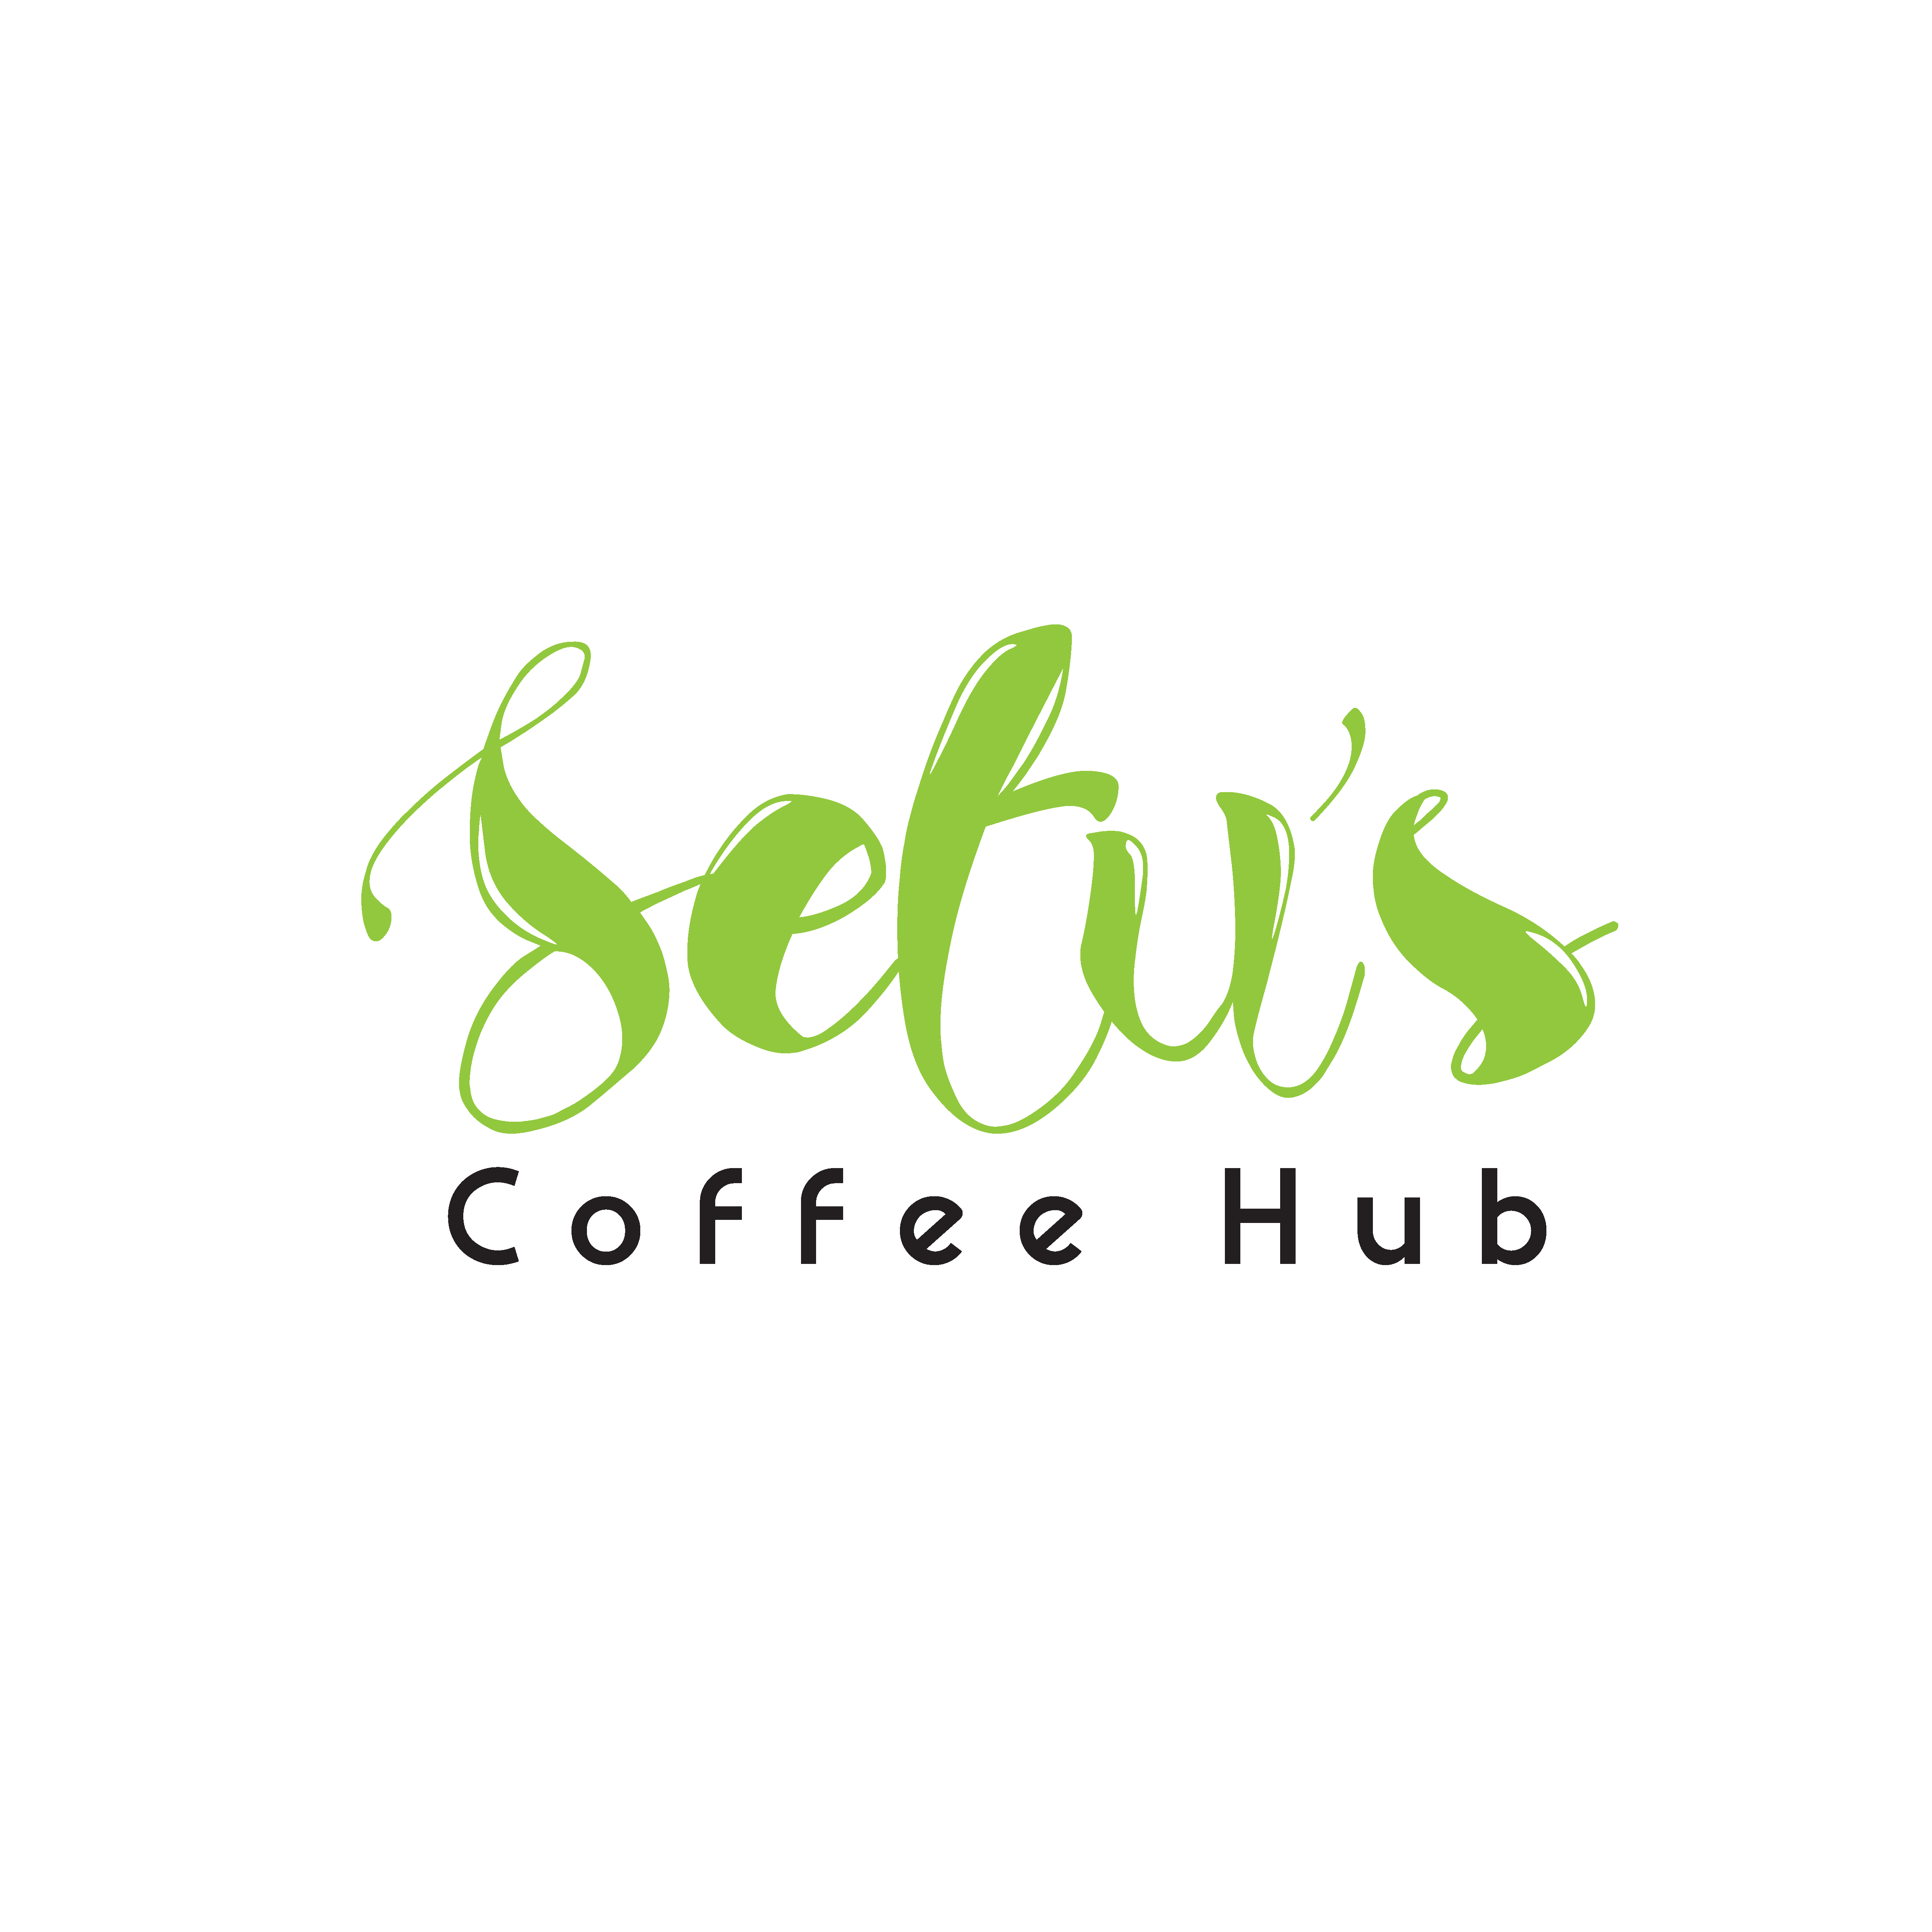 Setus Coffe hub